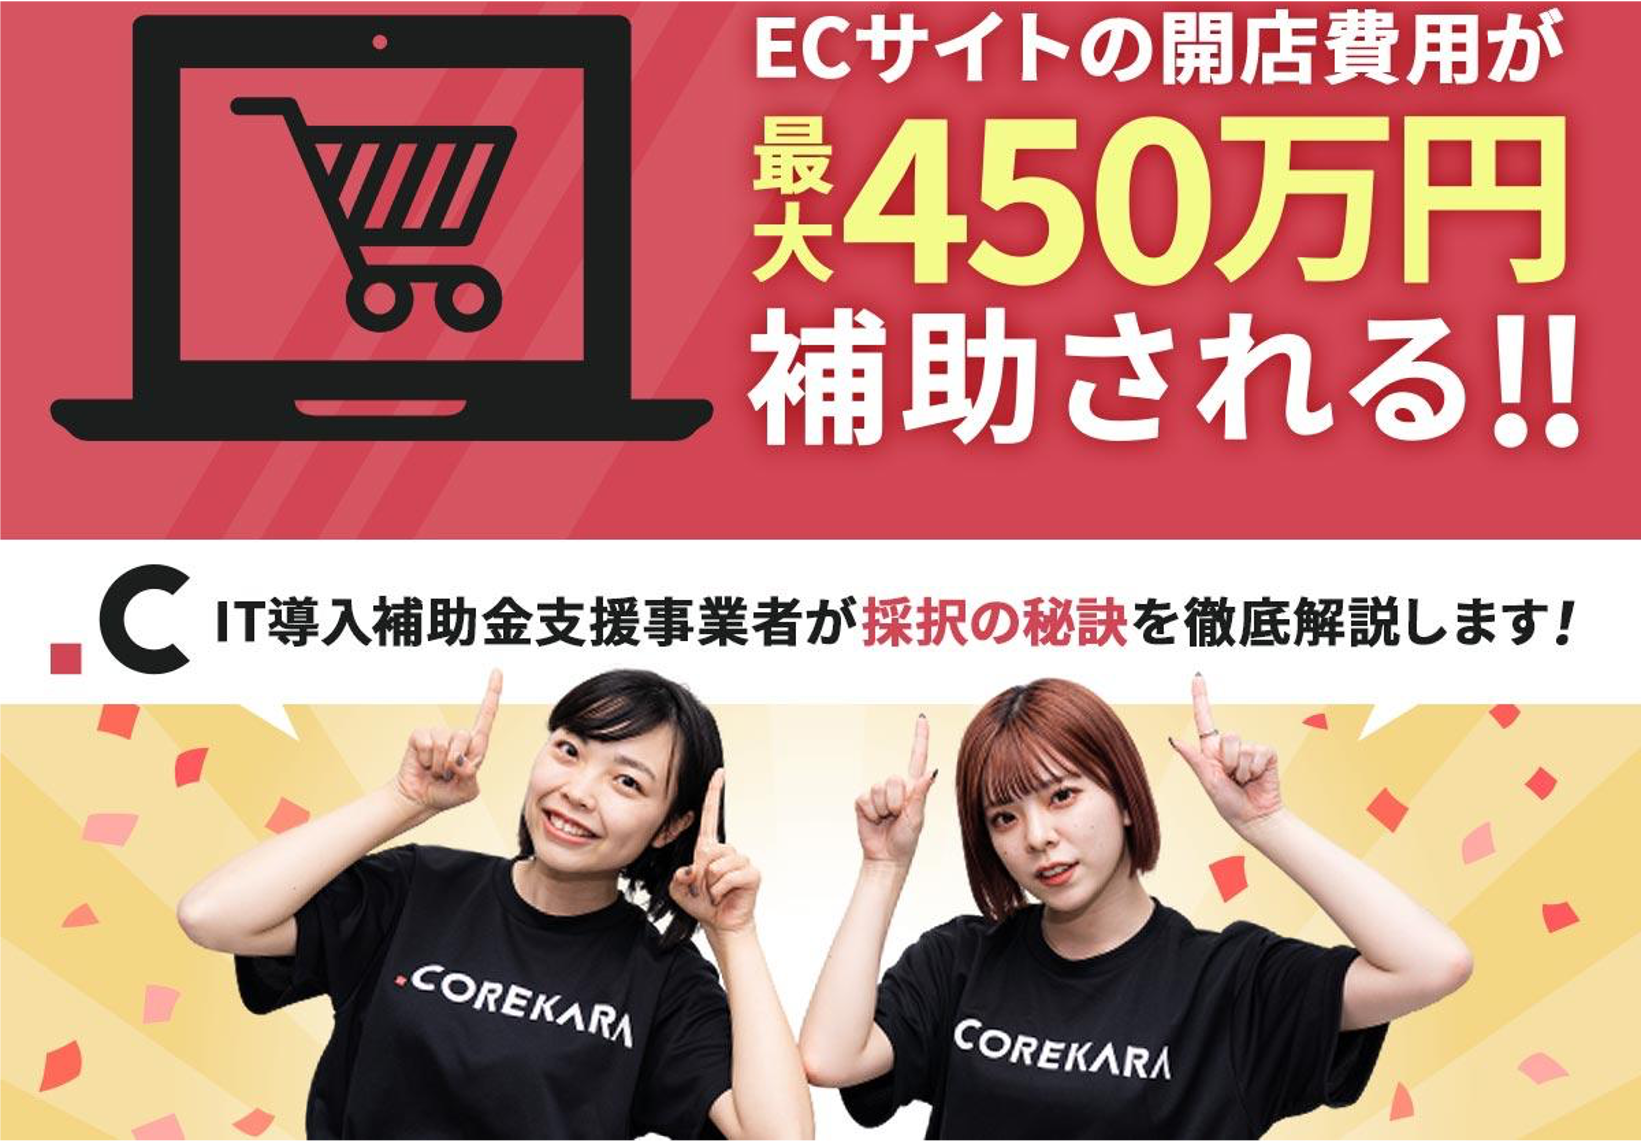 ECサイトの開店費用が“最大450万円”補助される!! “IT導入補助金” 採択の秘訣を徹底解説